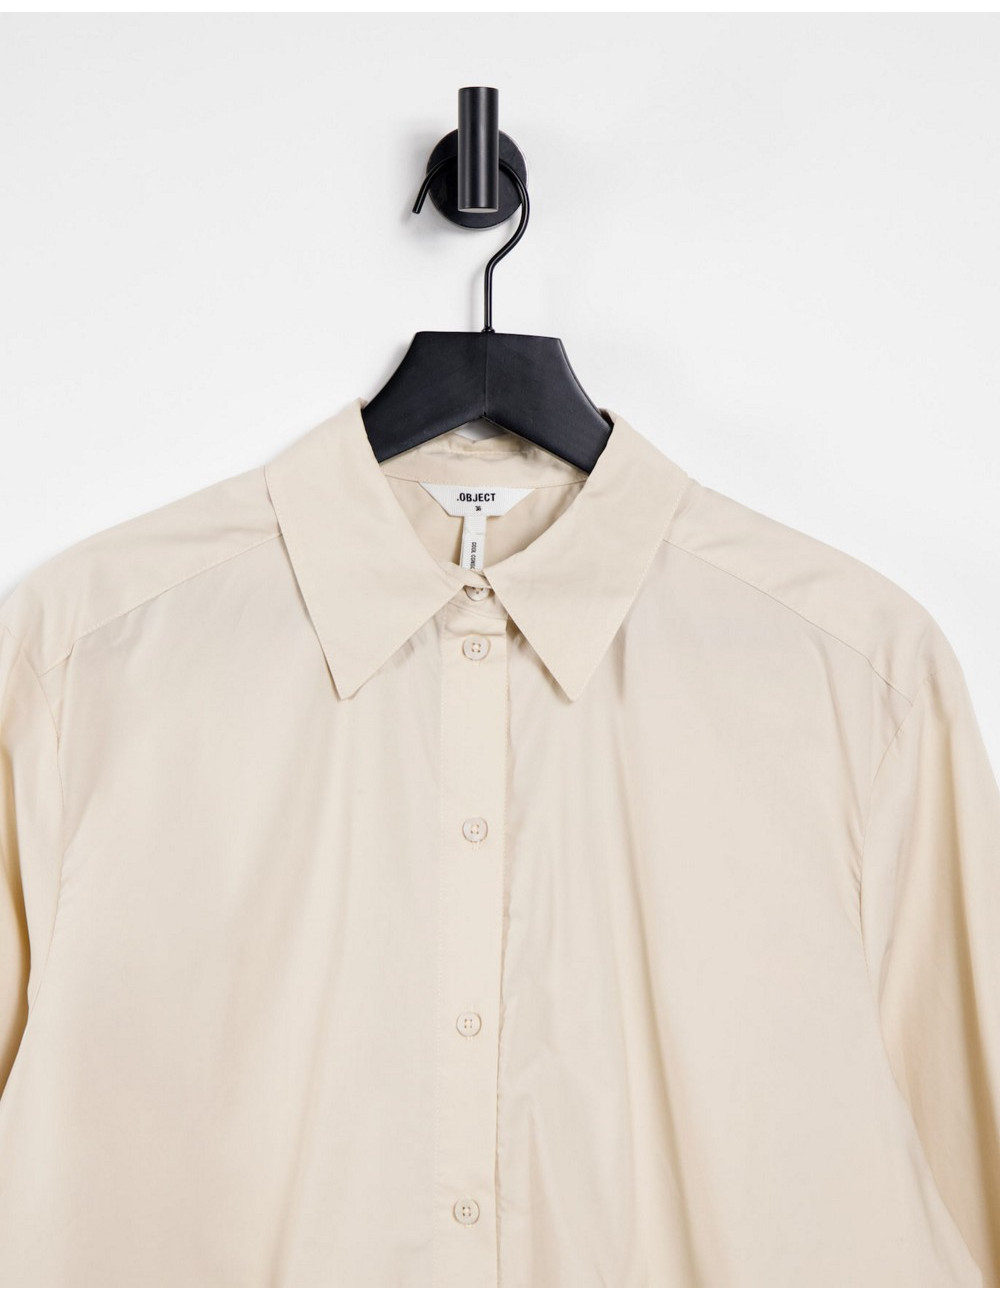 Object longline shirt in cream